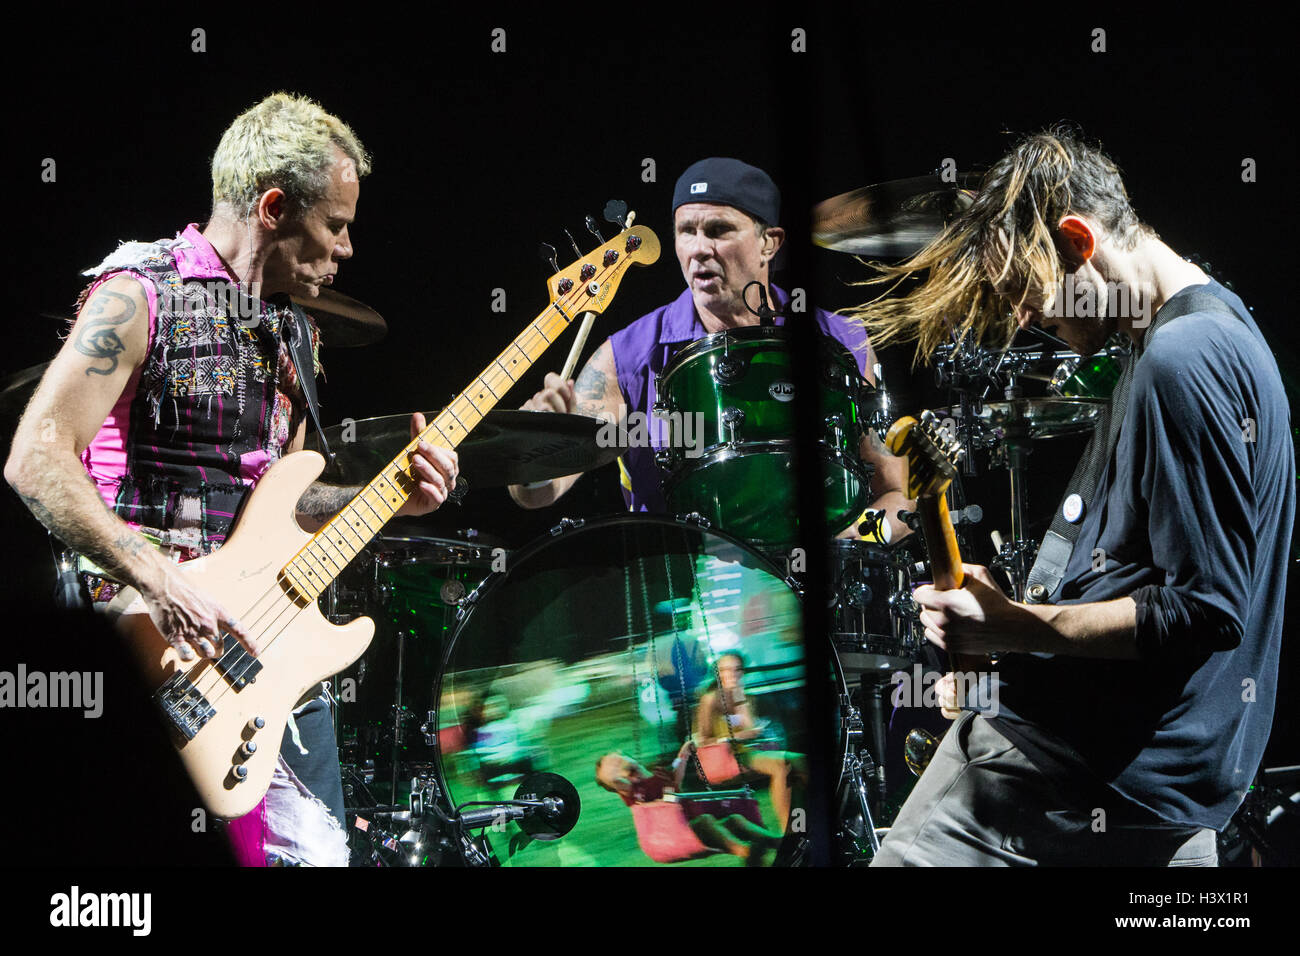 Torino Italia. 11 ottobre 2016. La American rock band Red Hot Chili Peppers  suona dal vivo al Pala Alpitour per presentare il loro nuovo album 'The  Getaway' Credit: Rodolfo Sassano/Alamy Live News